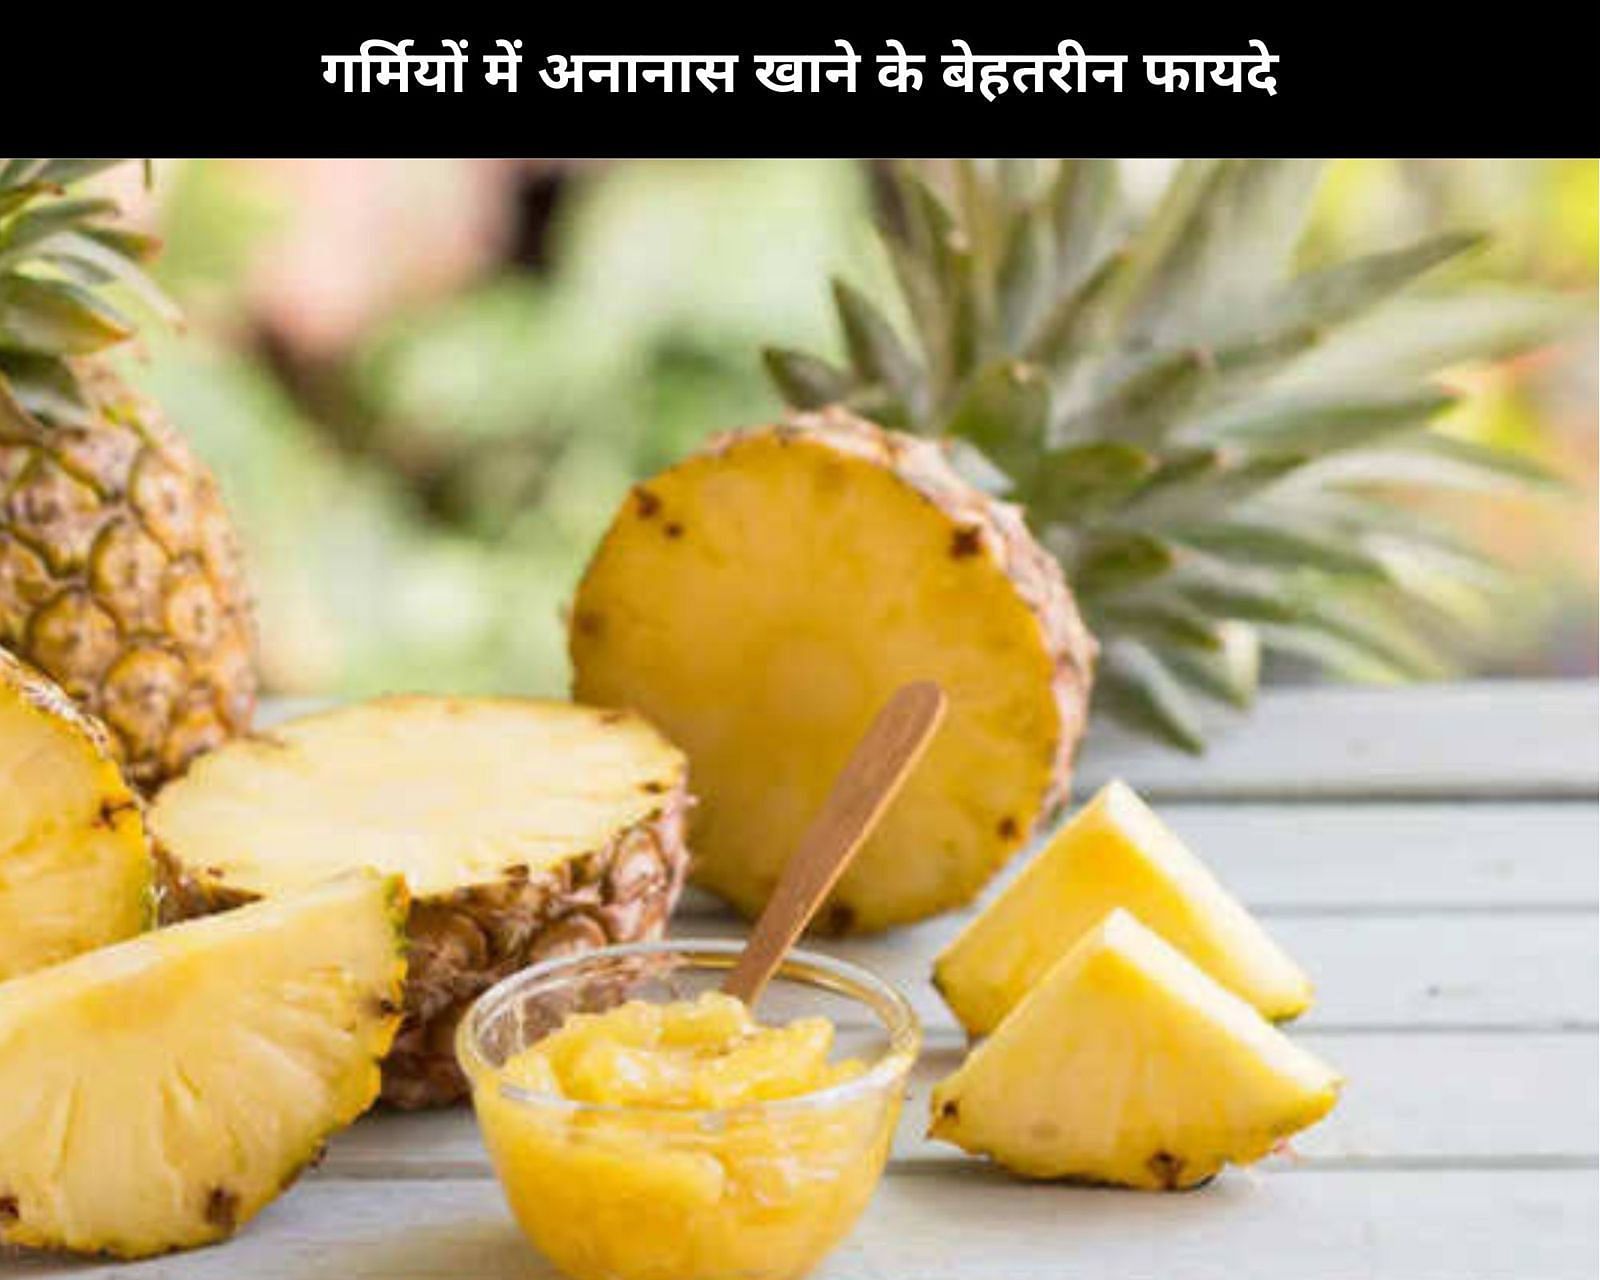 गर्मियों में अनानास खाने के बेहतरीन फायदे (फोटो - sportskeeda hindi)